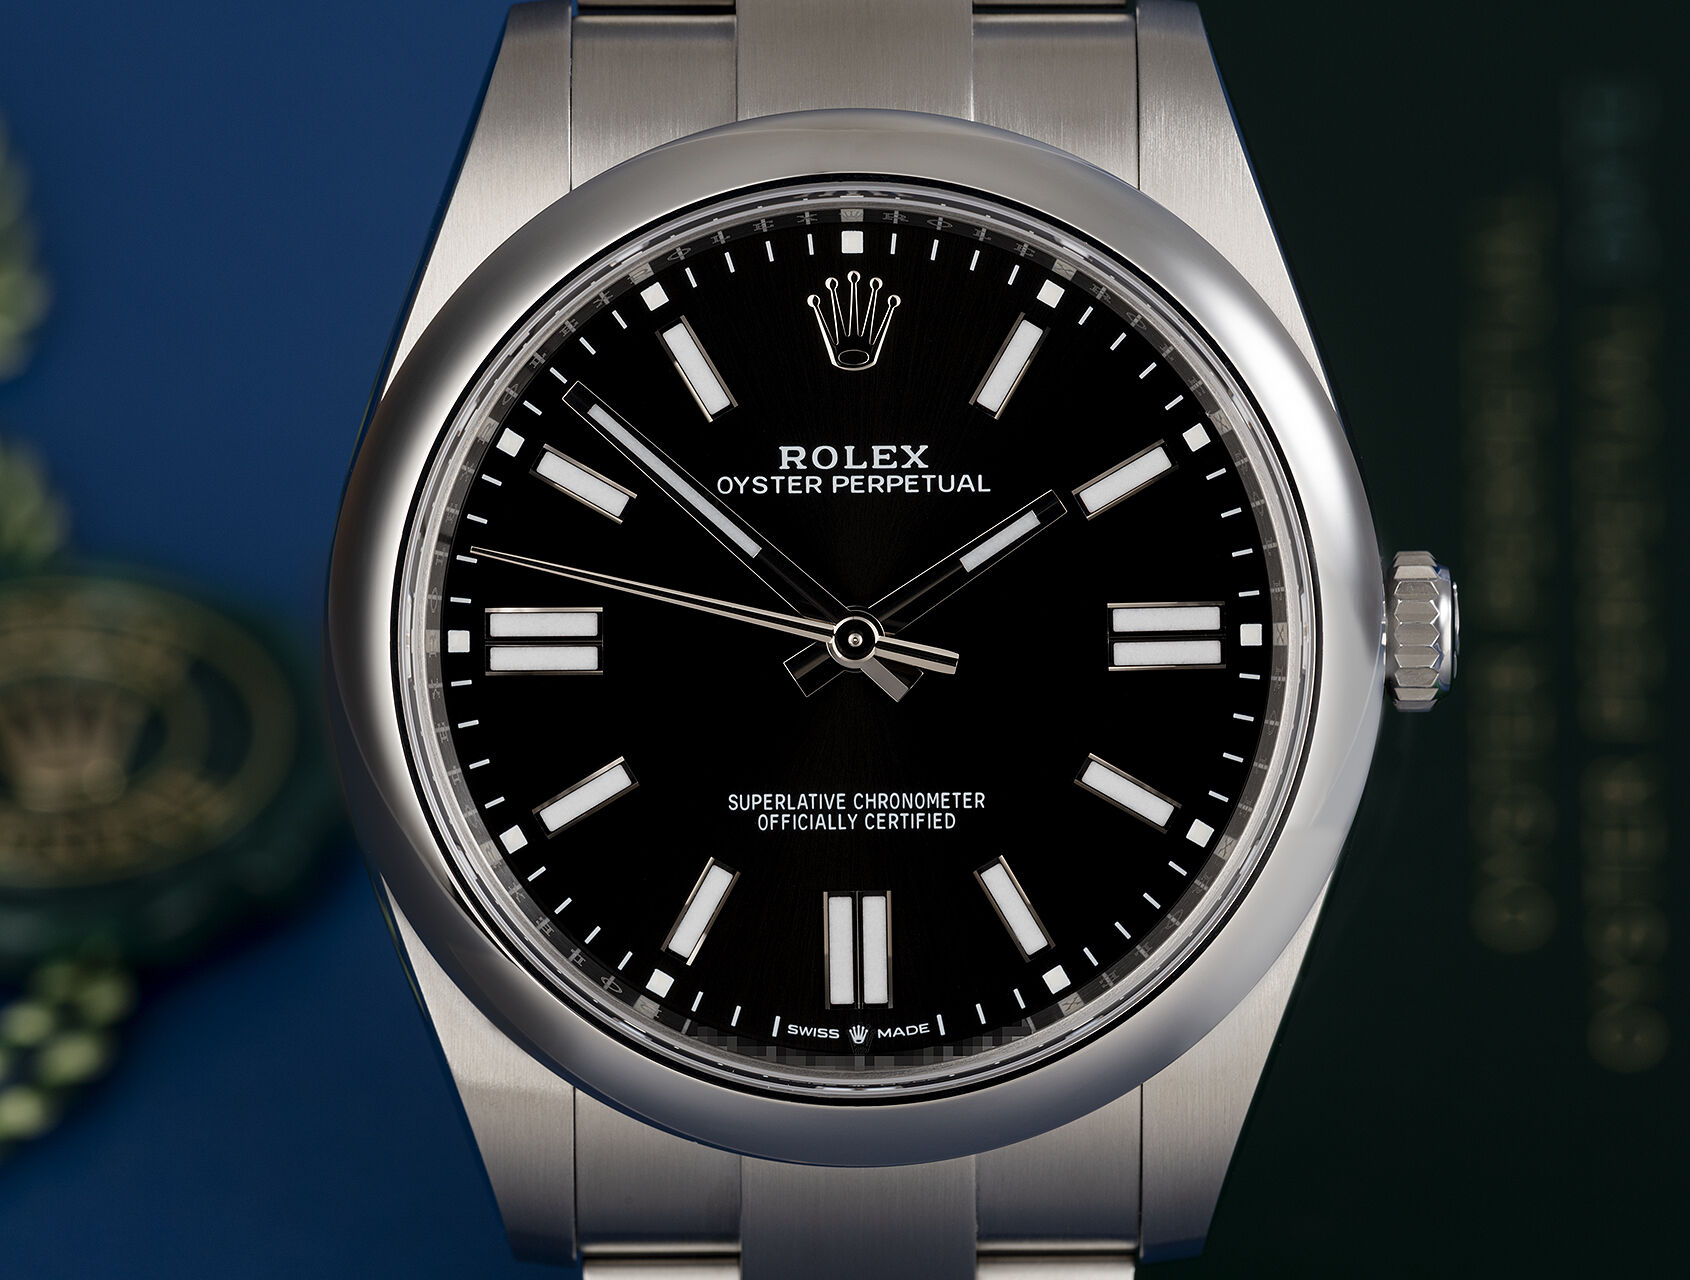 ref 124300 | 124300 - Box & Certificate | Rolex Oyster Perpetual